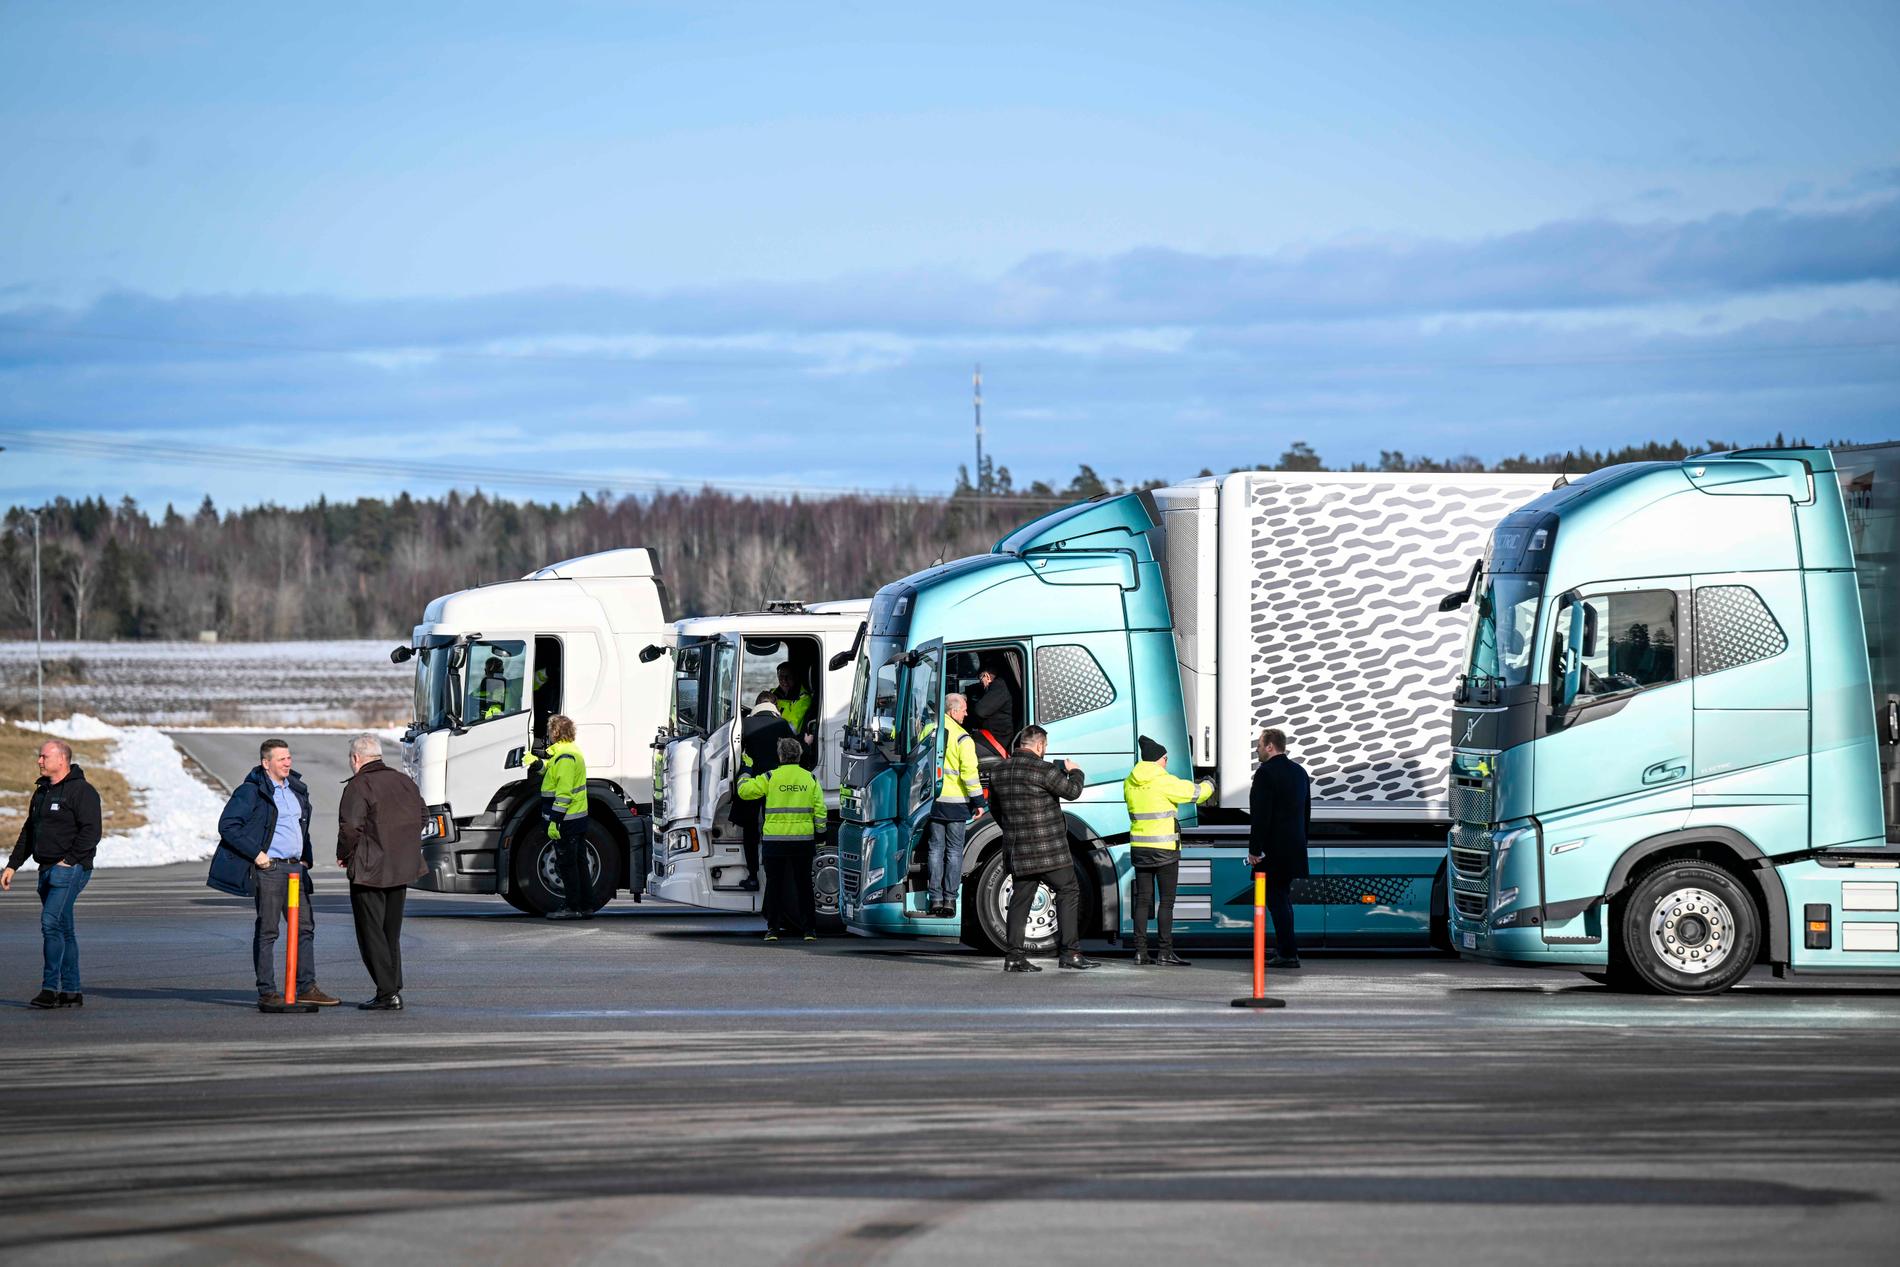 EU:s energiministrar provkör ellastbilar från Scania.